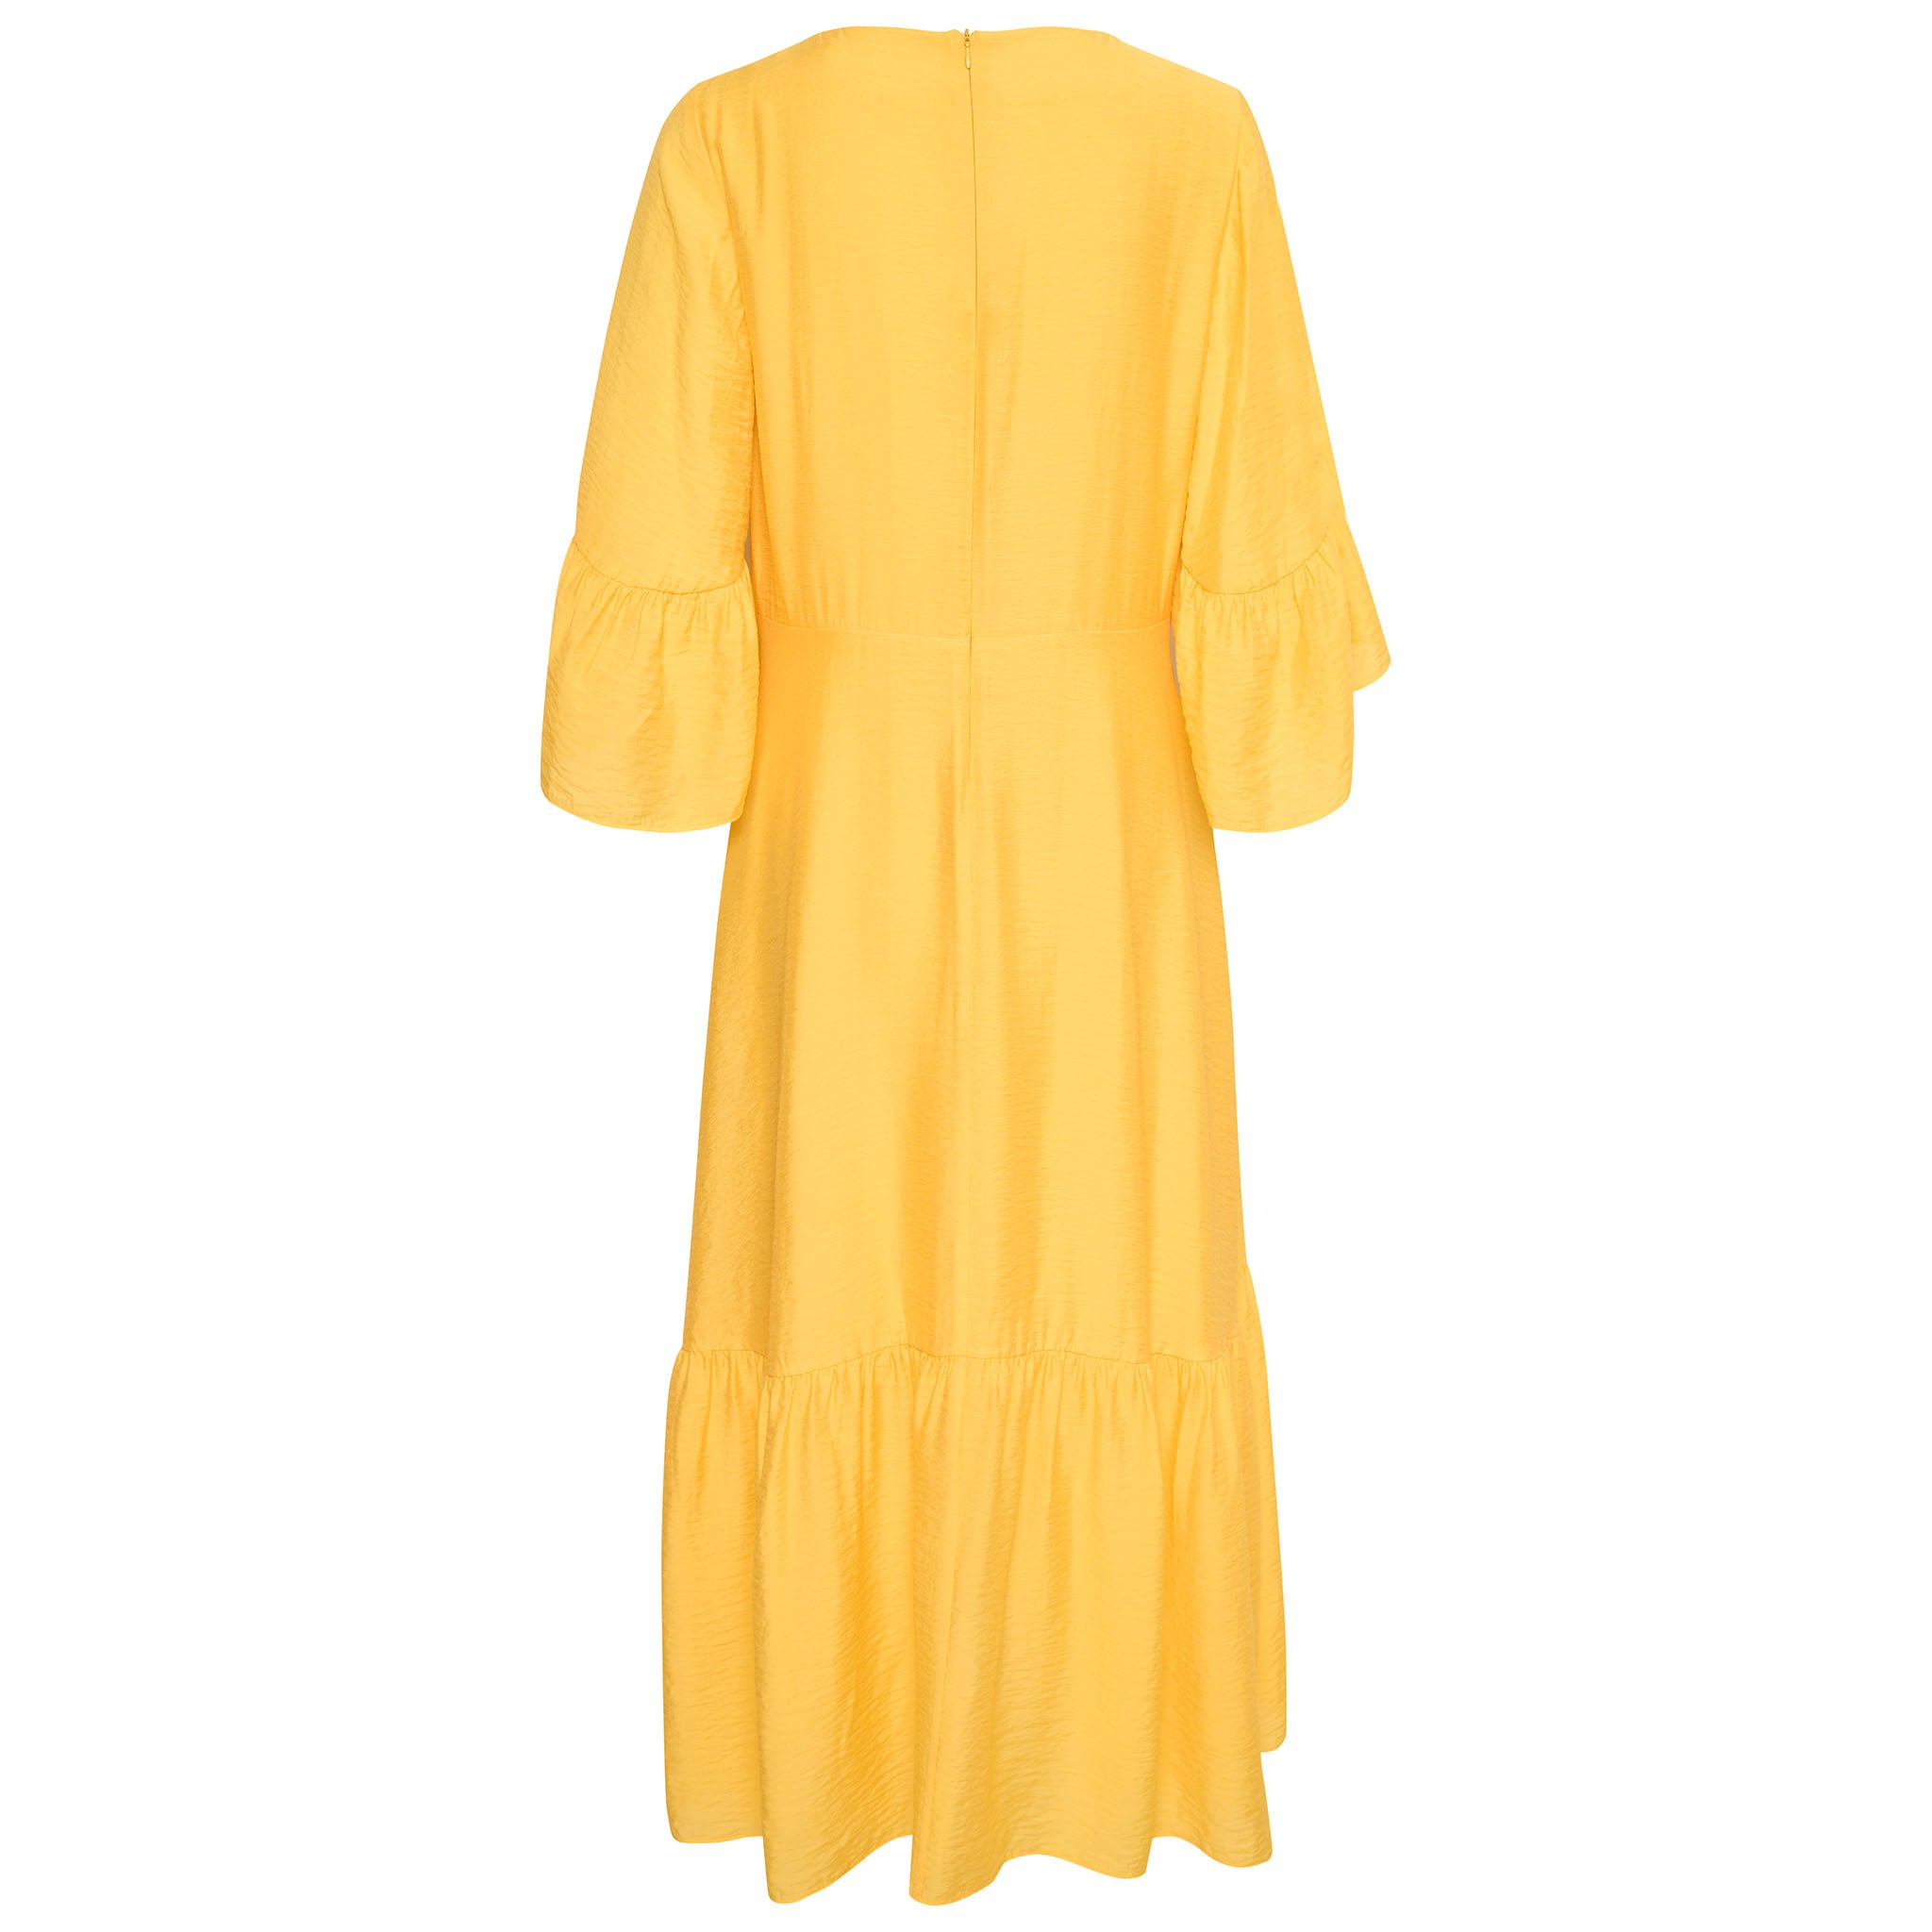 In Wear, kirkkaan keltainen, pitkä mekko. Frillat hihoissa ja helmassa. Takakuva.